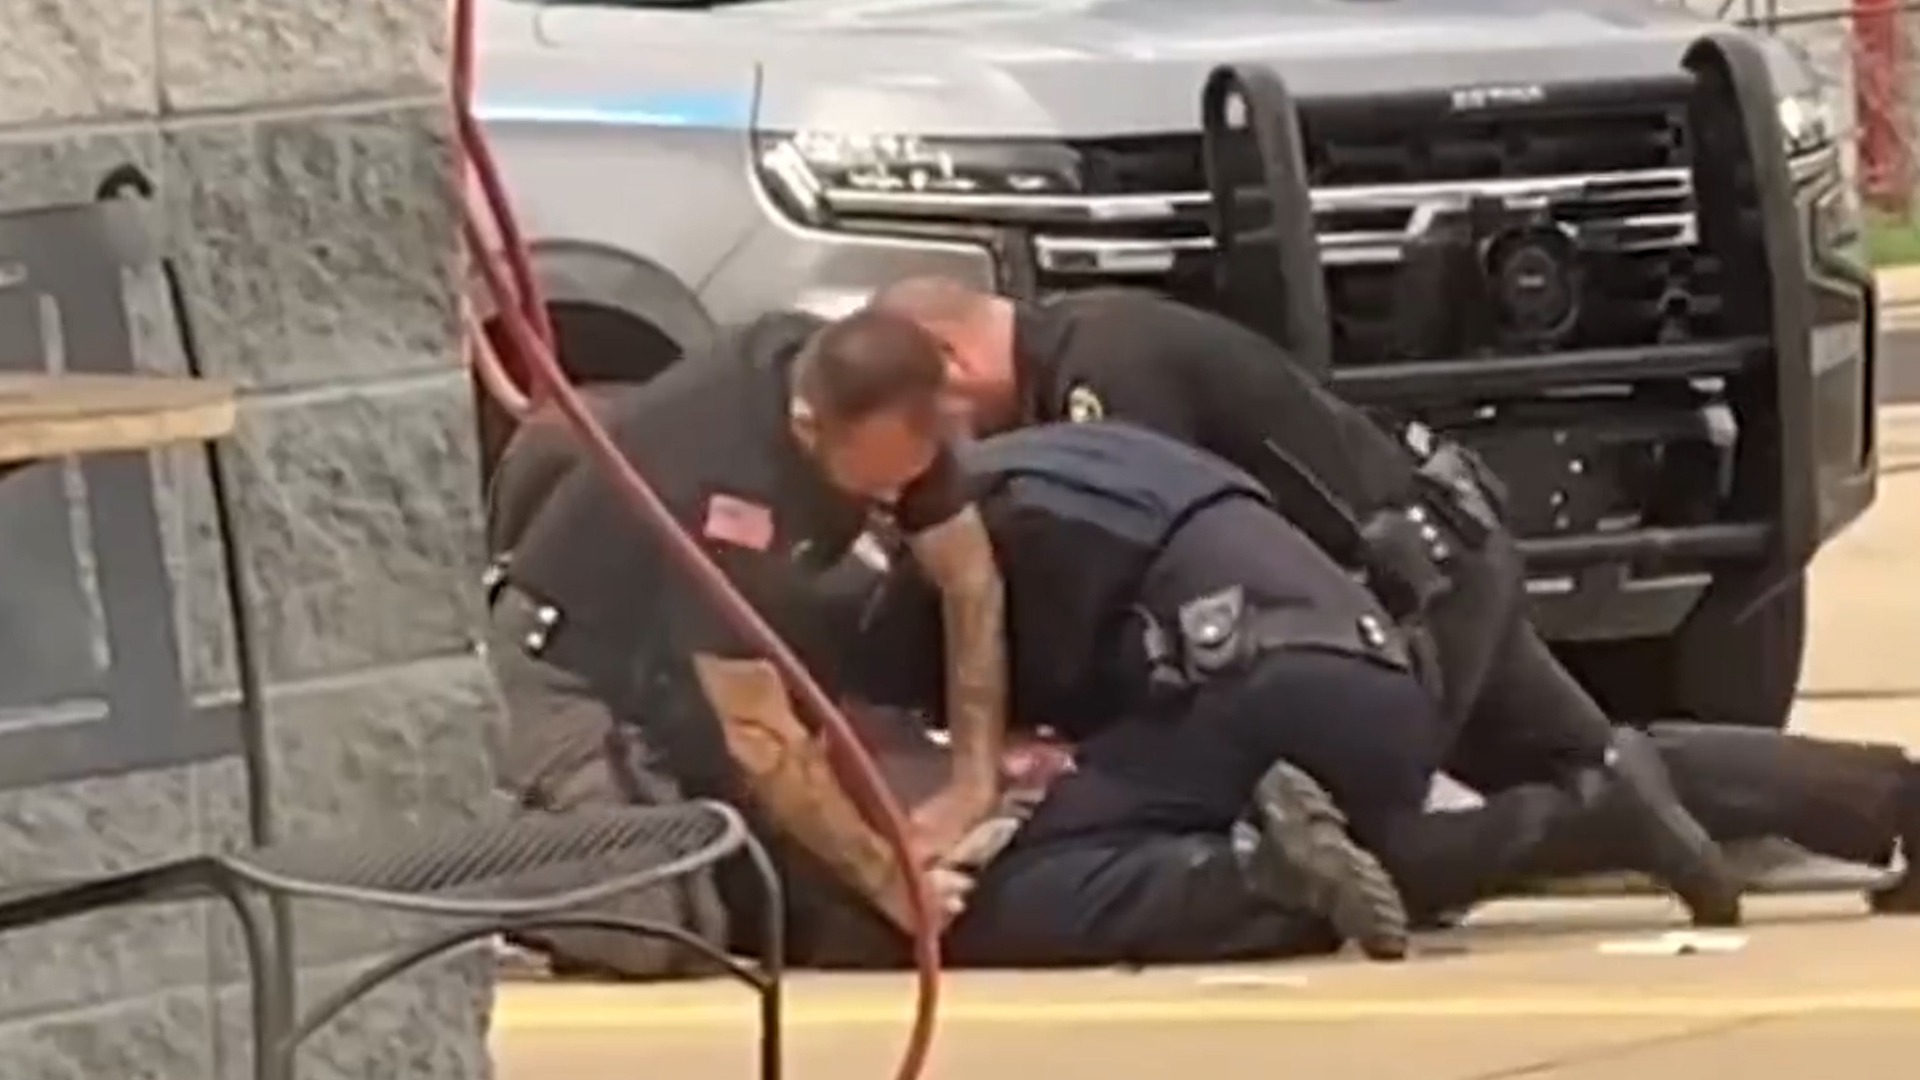 La dura reprimenda que recibieron los policías que golpearon brutalmente a sospechoso en Arkansas